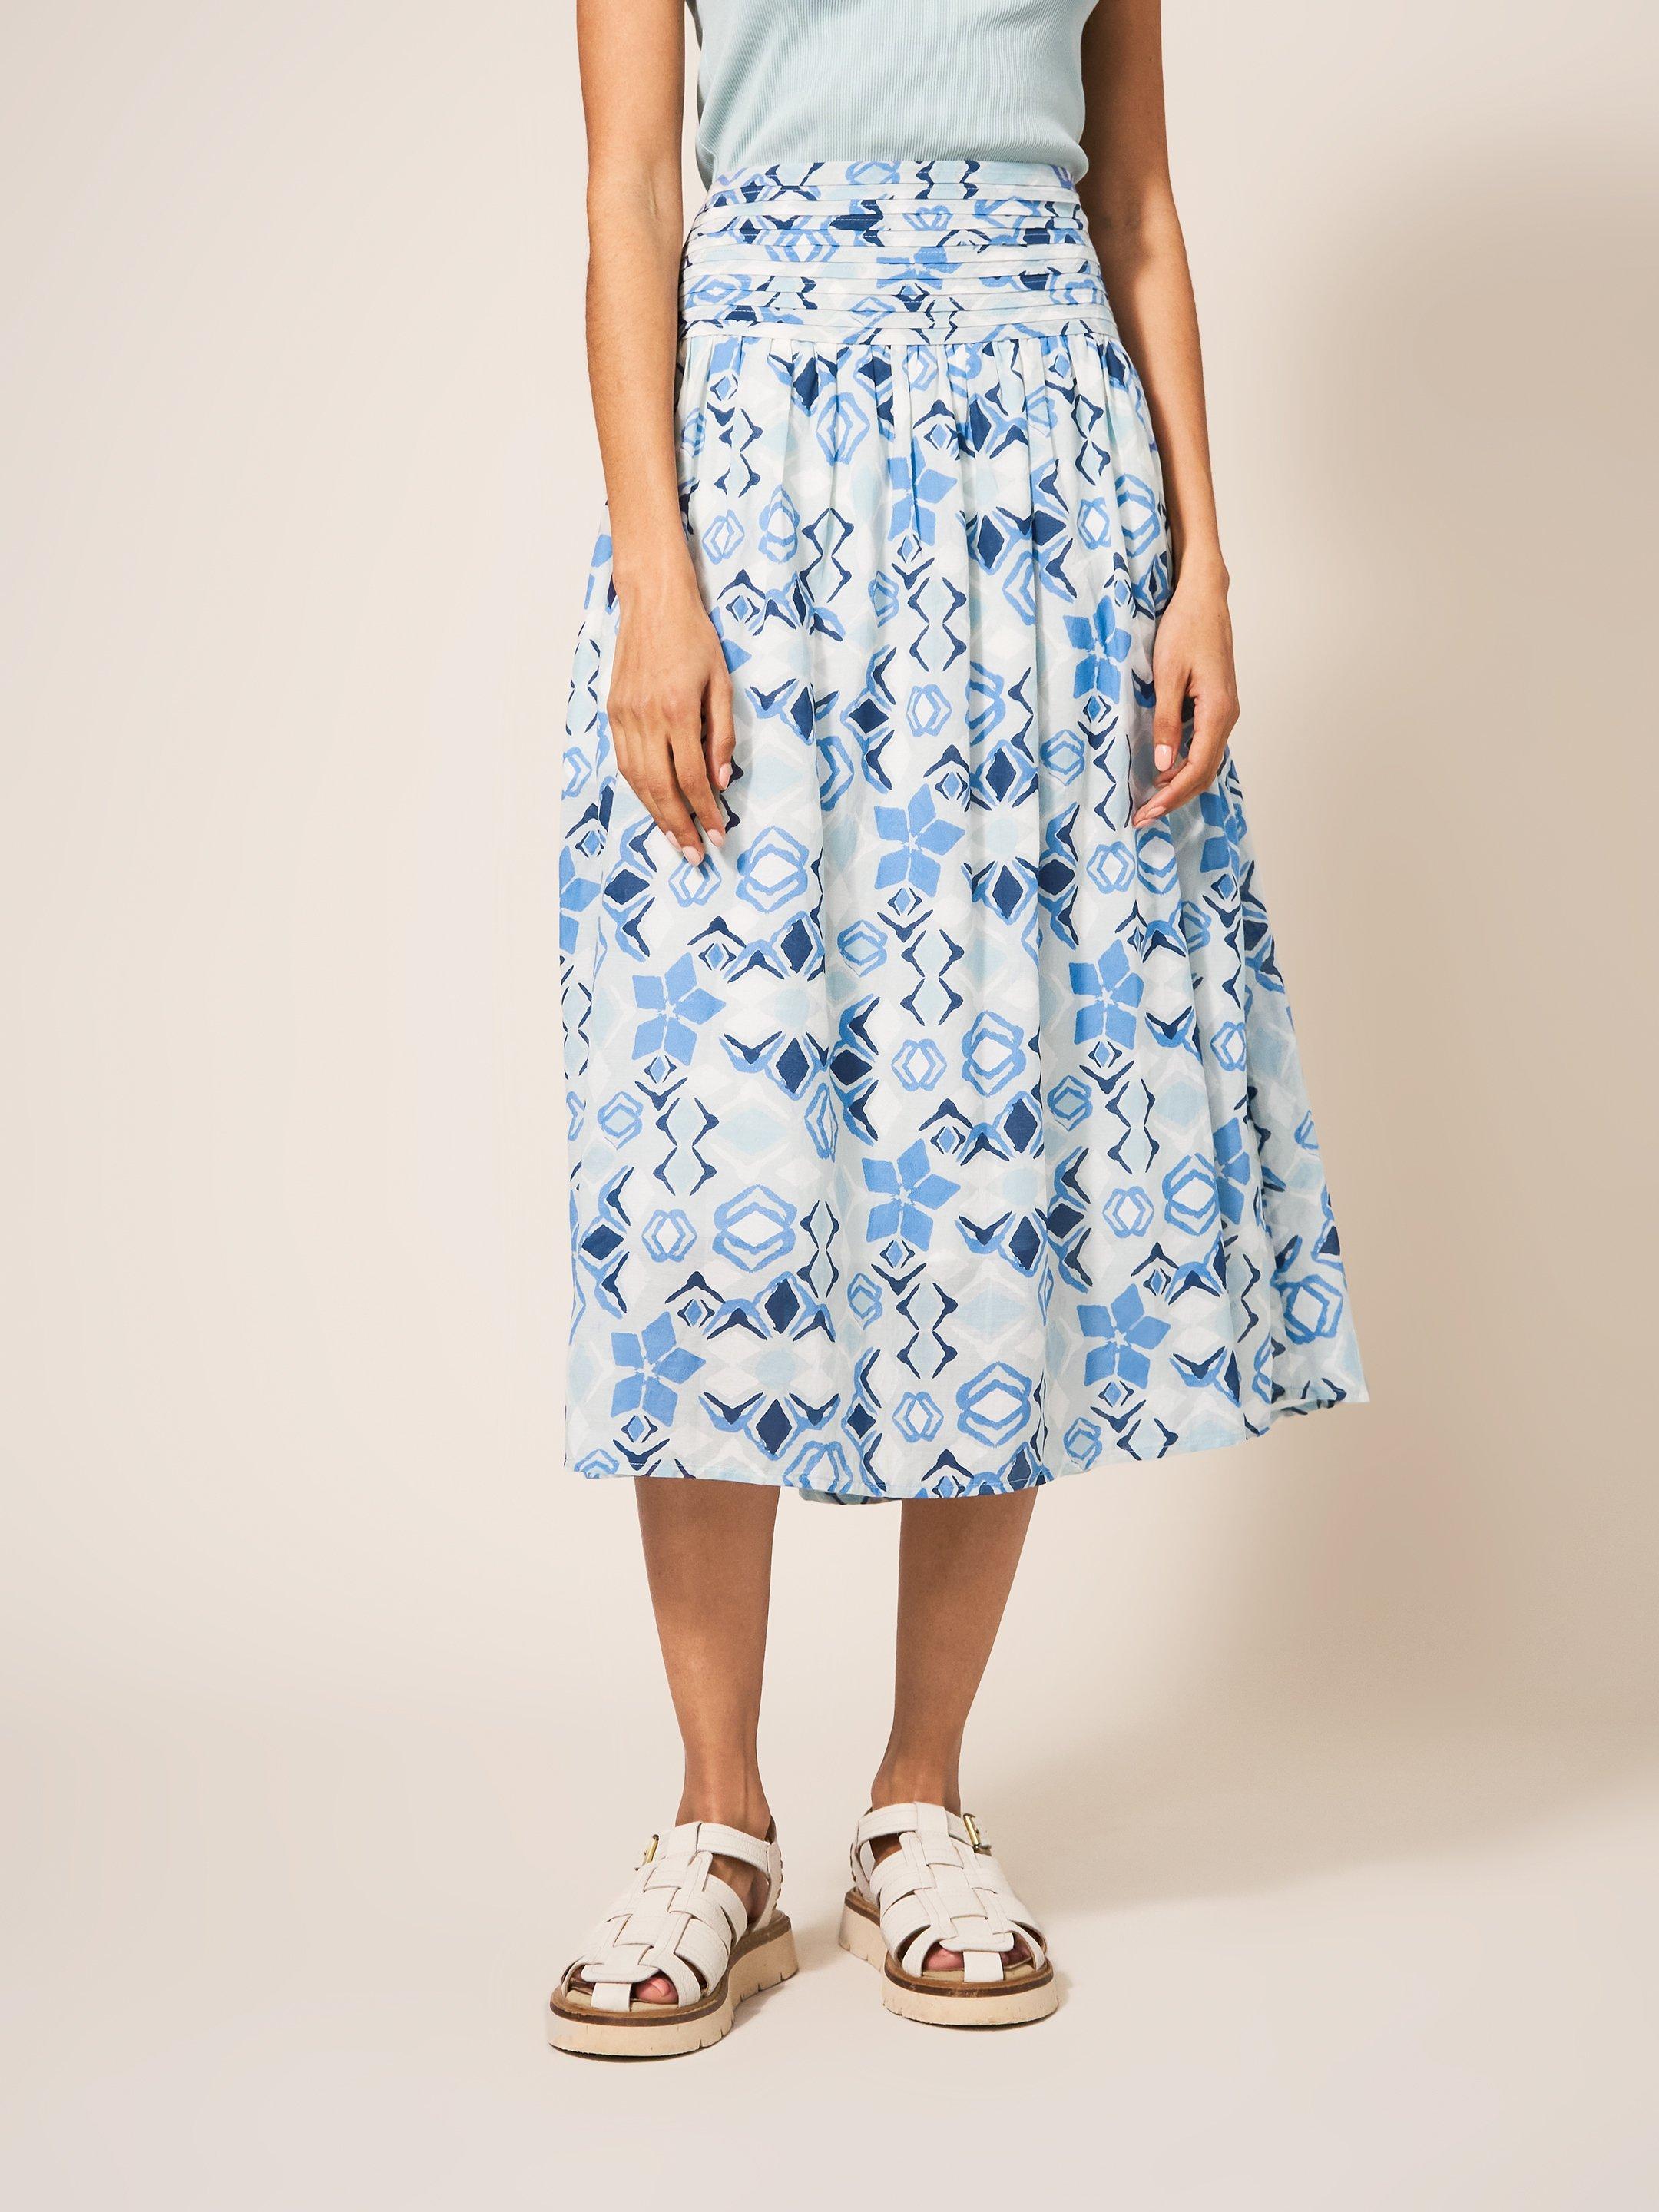 Maeva Skirt in BLUE MLT - MODEL FRONT